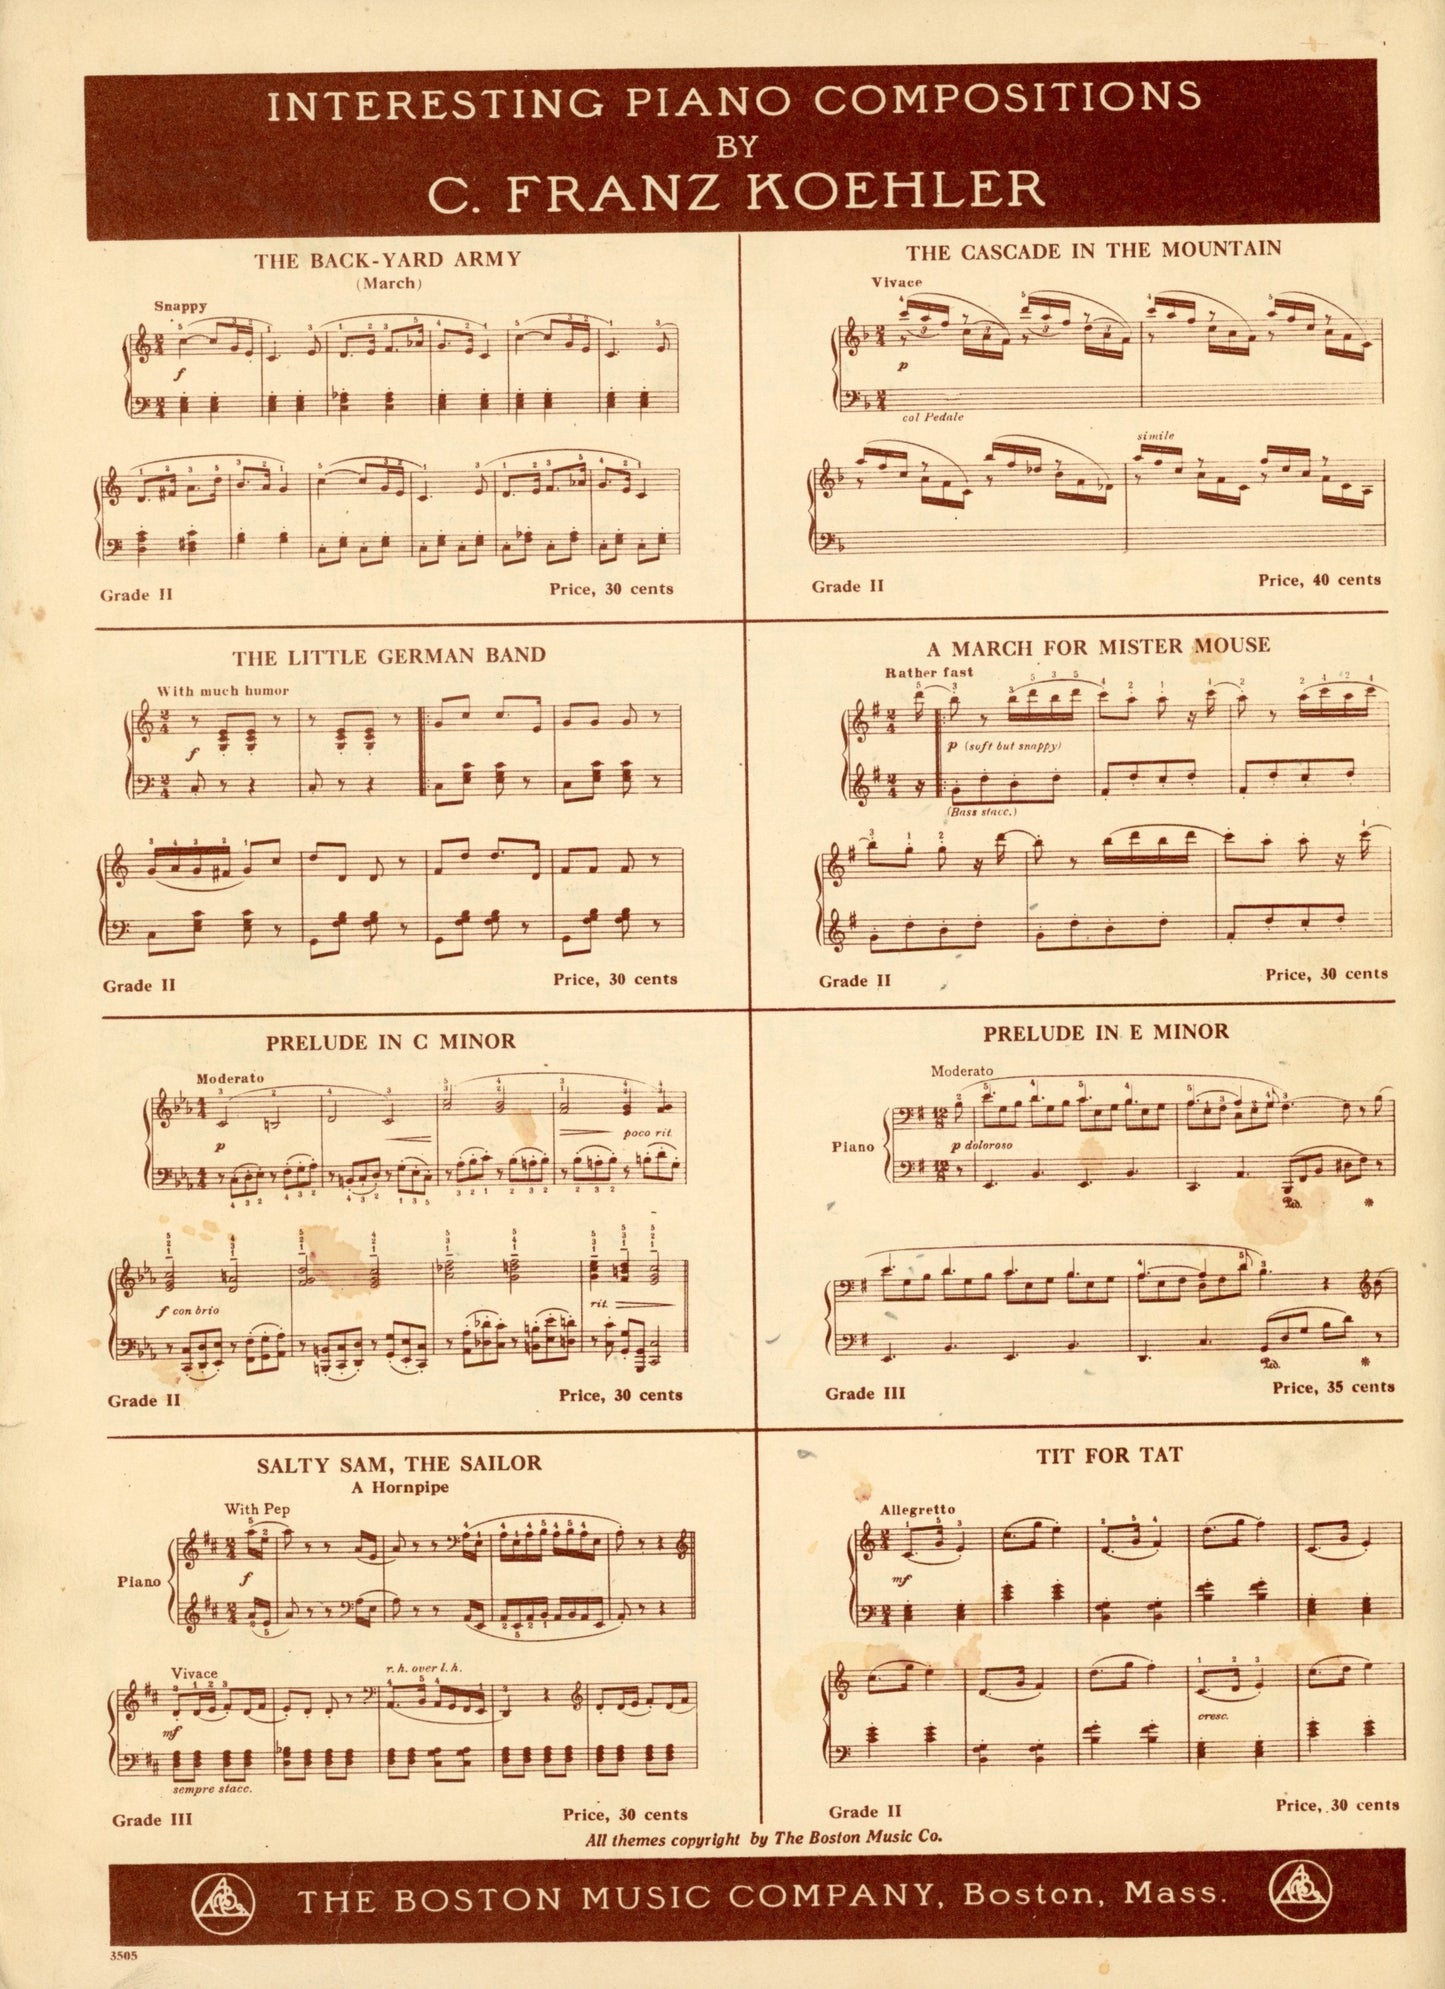 JITTERBUGS by Stanford King Vintage Sheet Music ©1946